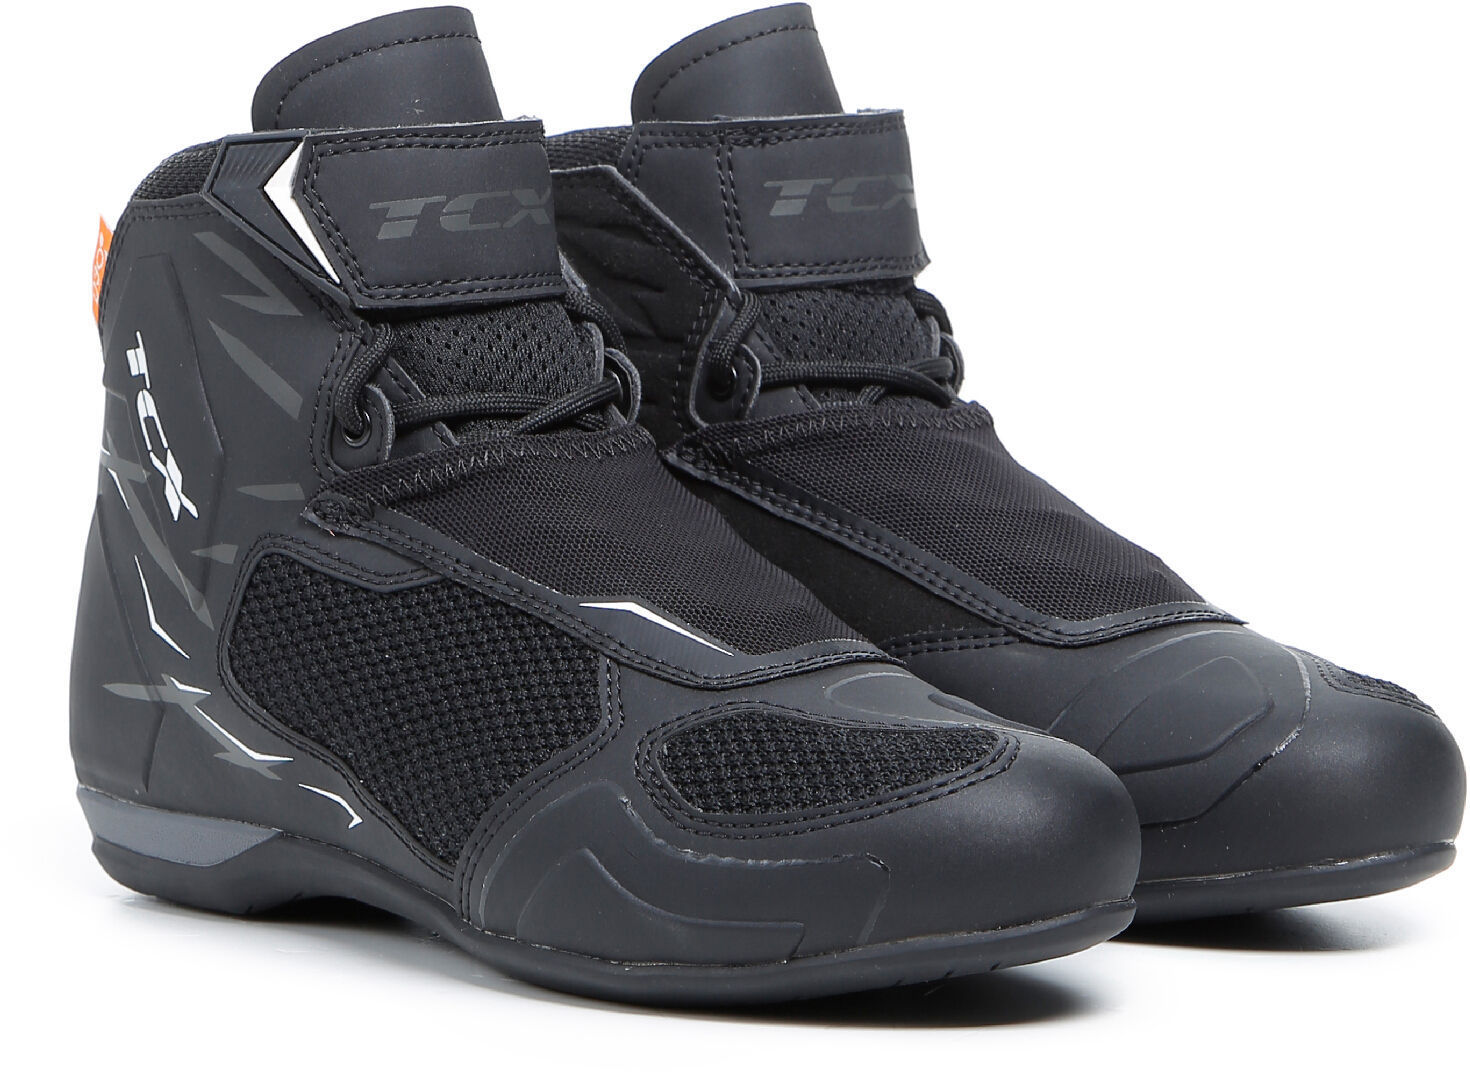 TCX RO4D Air Zapatos de motocicleta para damas - Negro Blanco (39)